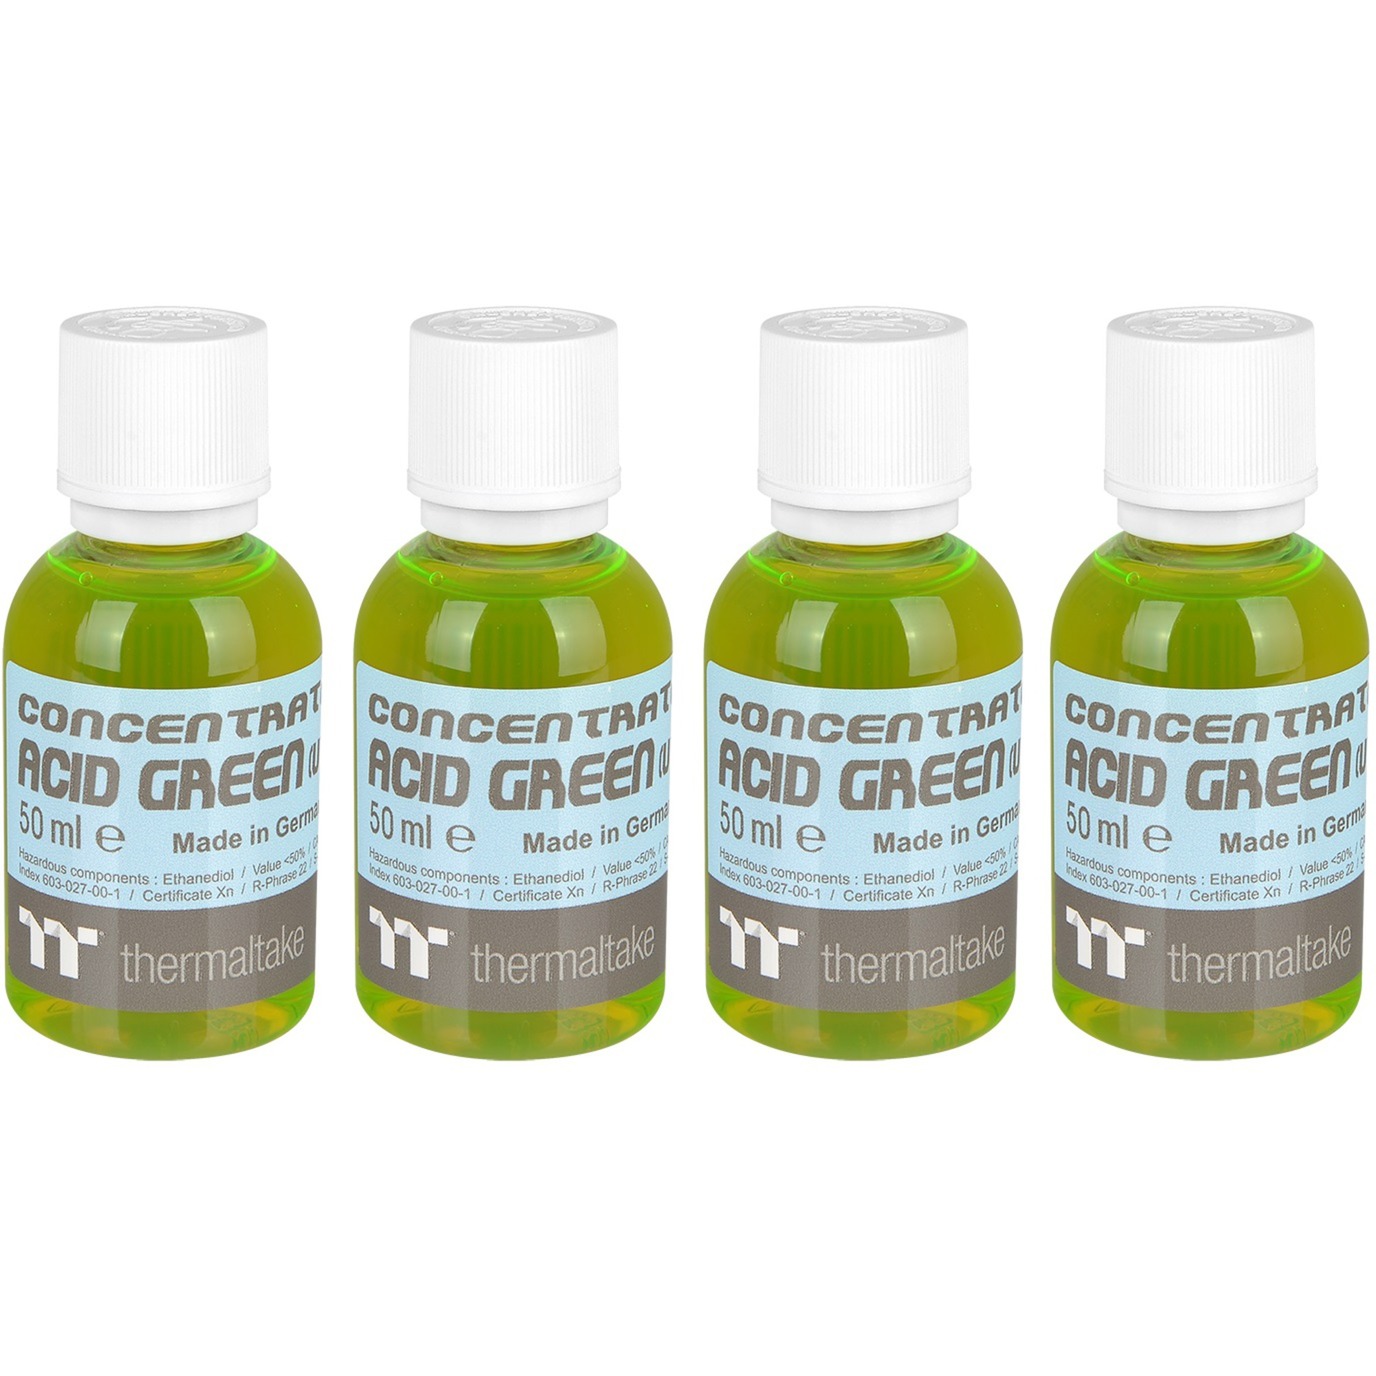 Image of Alternate - Premium Concentrate - Acid Green (4 Bottle Pack), Kühlmittel online einkaufen bei Alternate